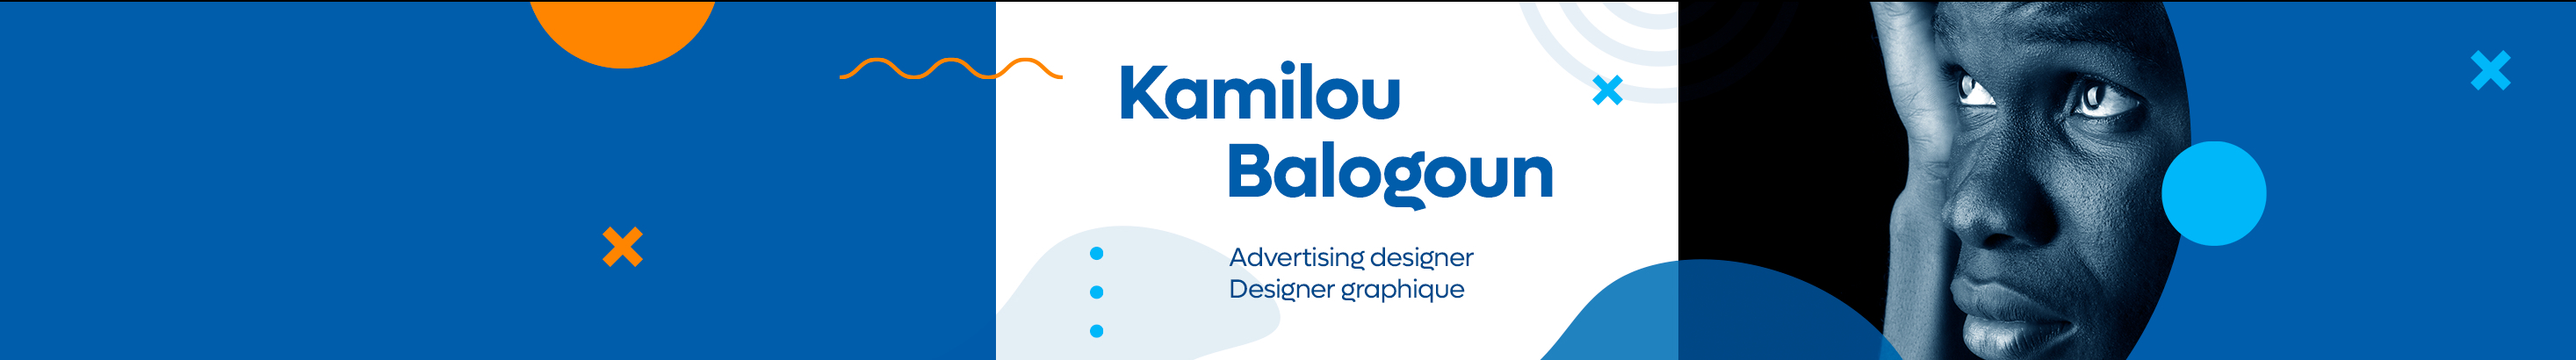 Banner de perfil de Kamilou Balogoun